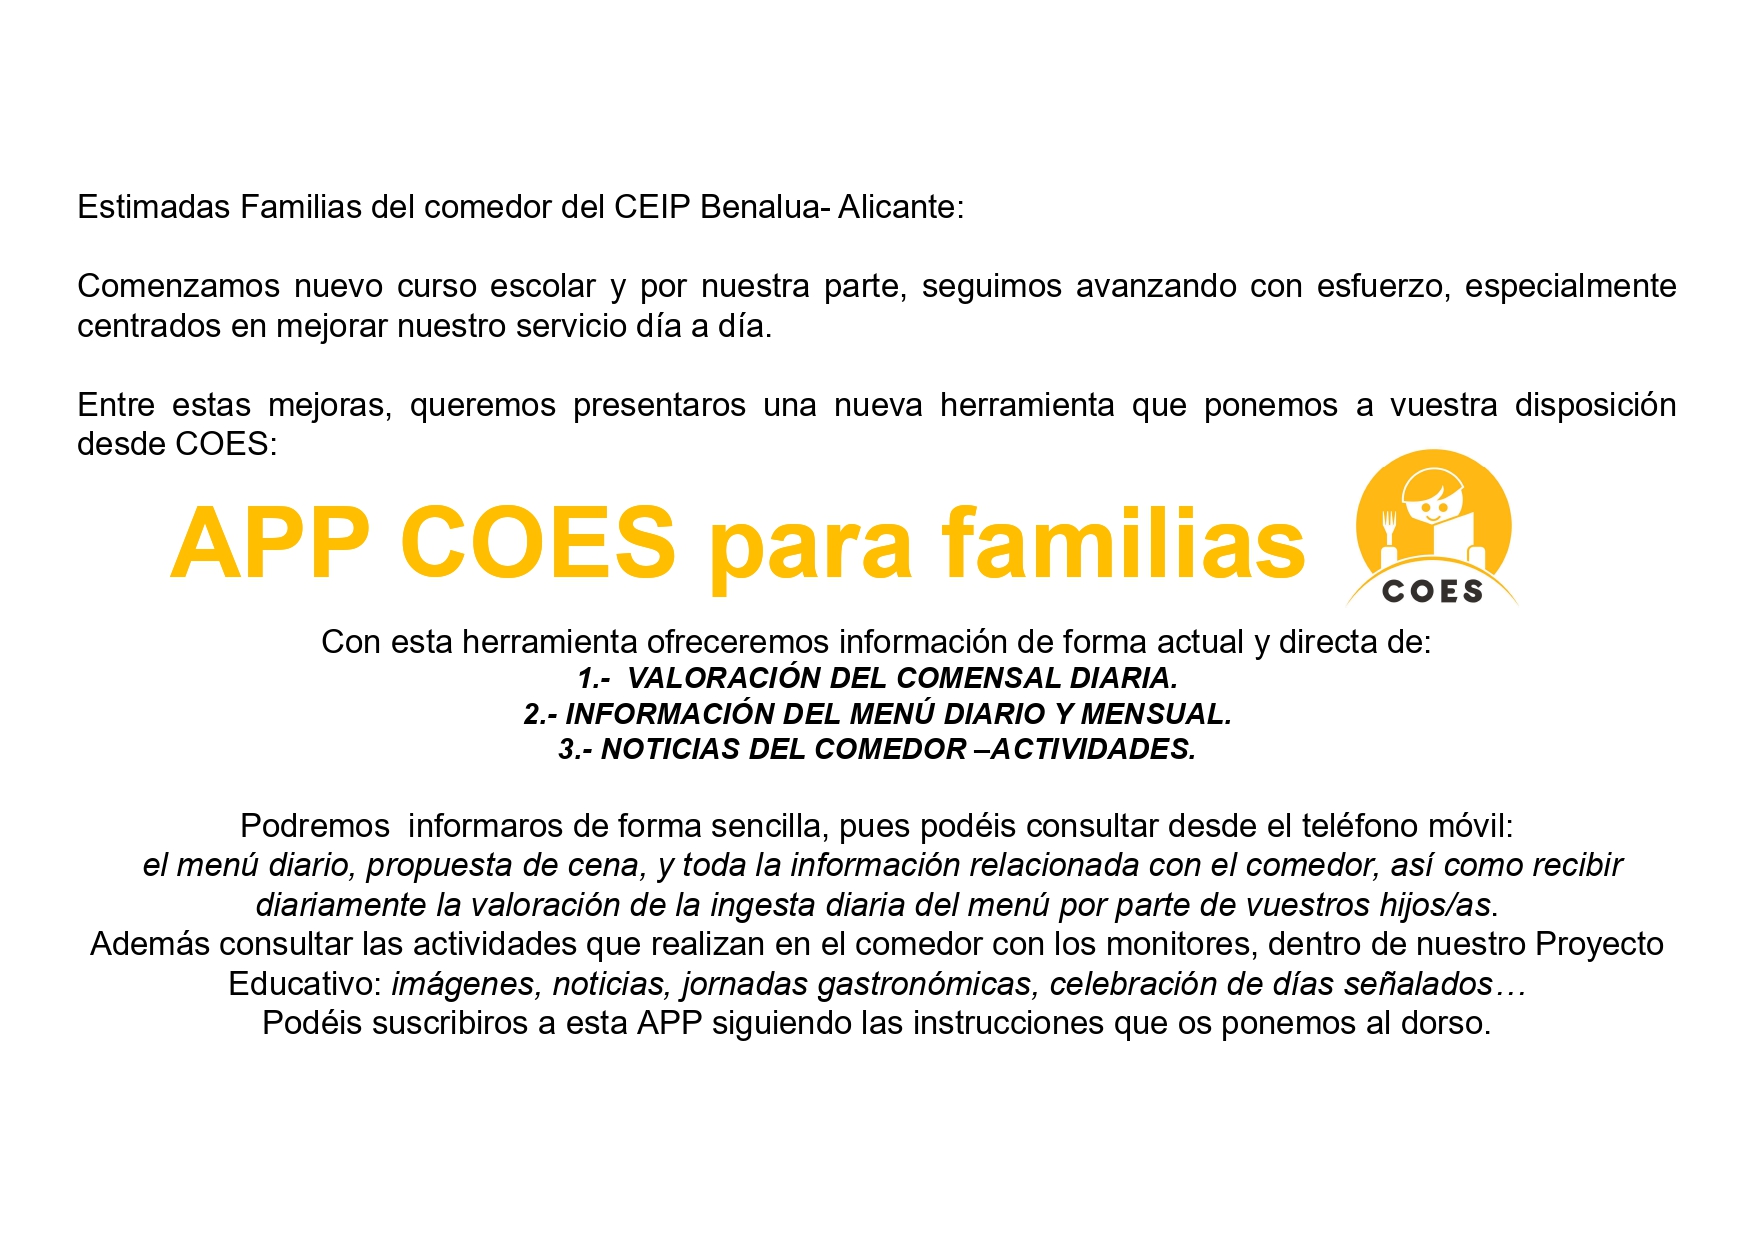 MANUAL REGISTRO APP COES FAMILIAS CEIP BENALUA ALICANTE_page-0001